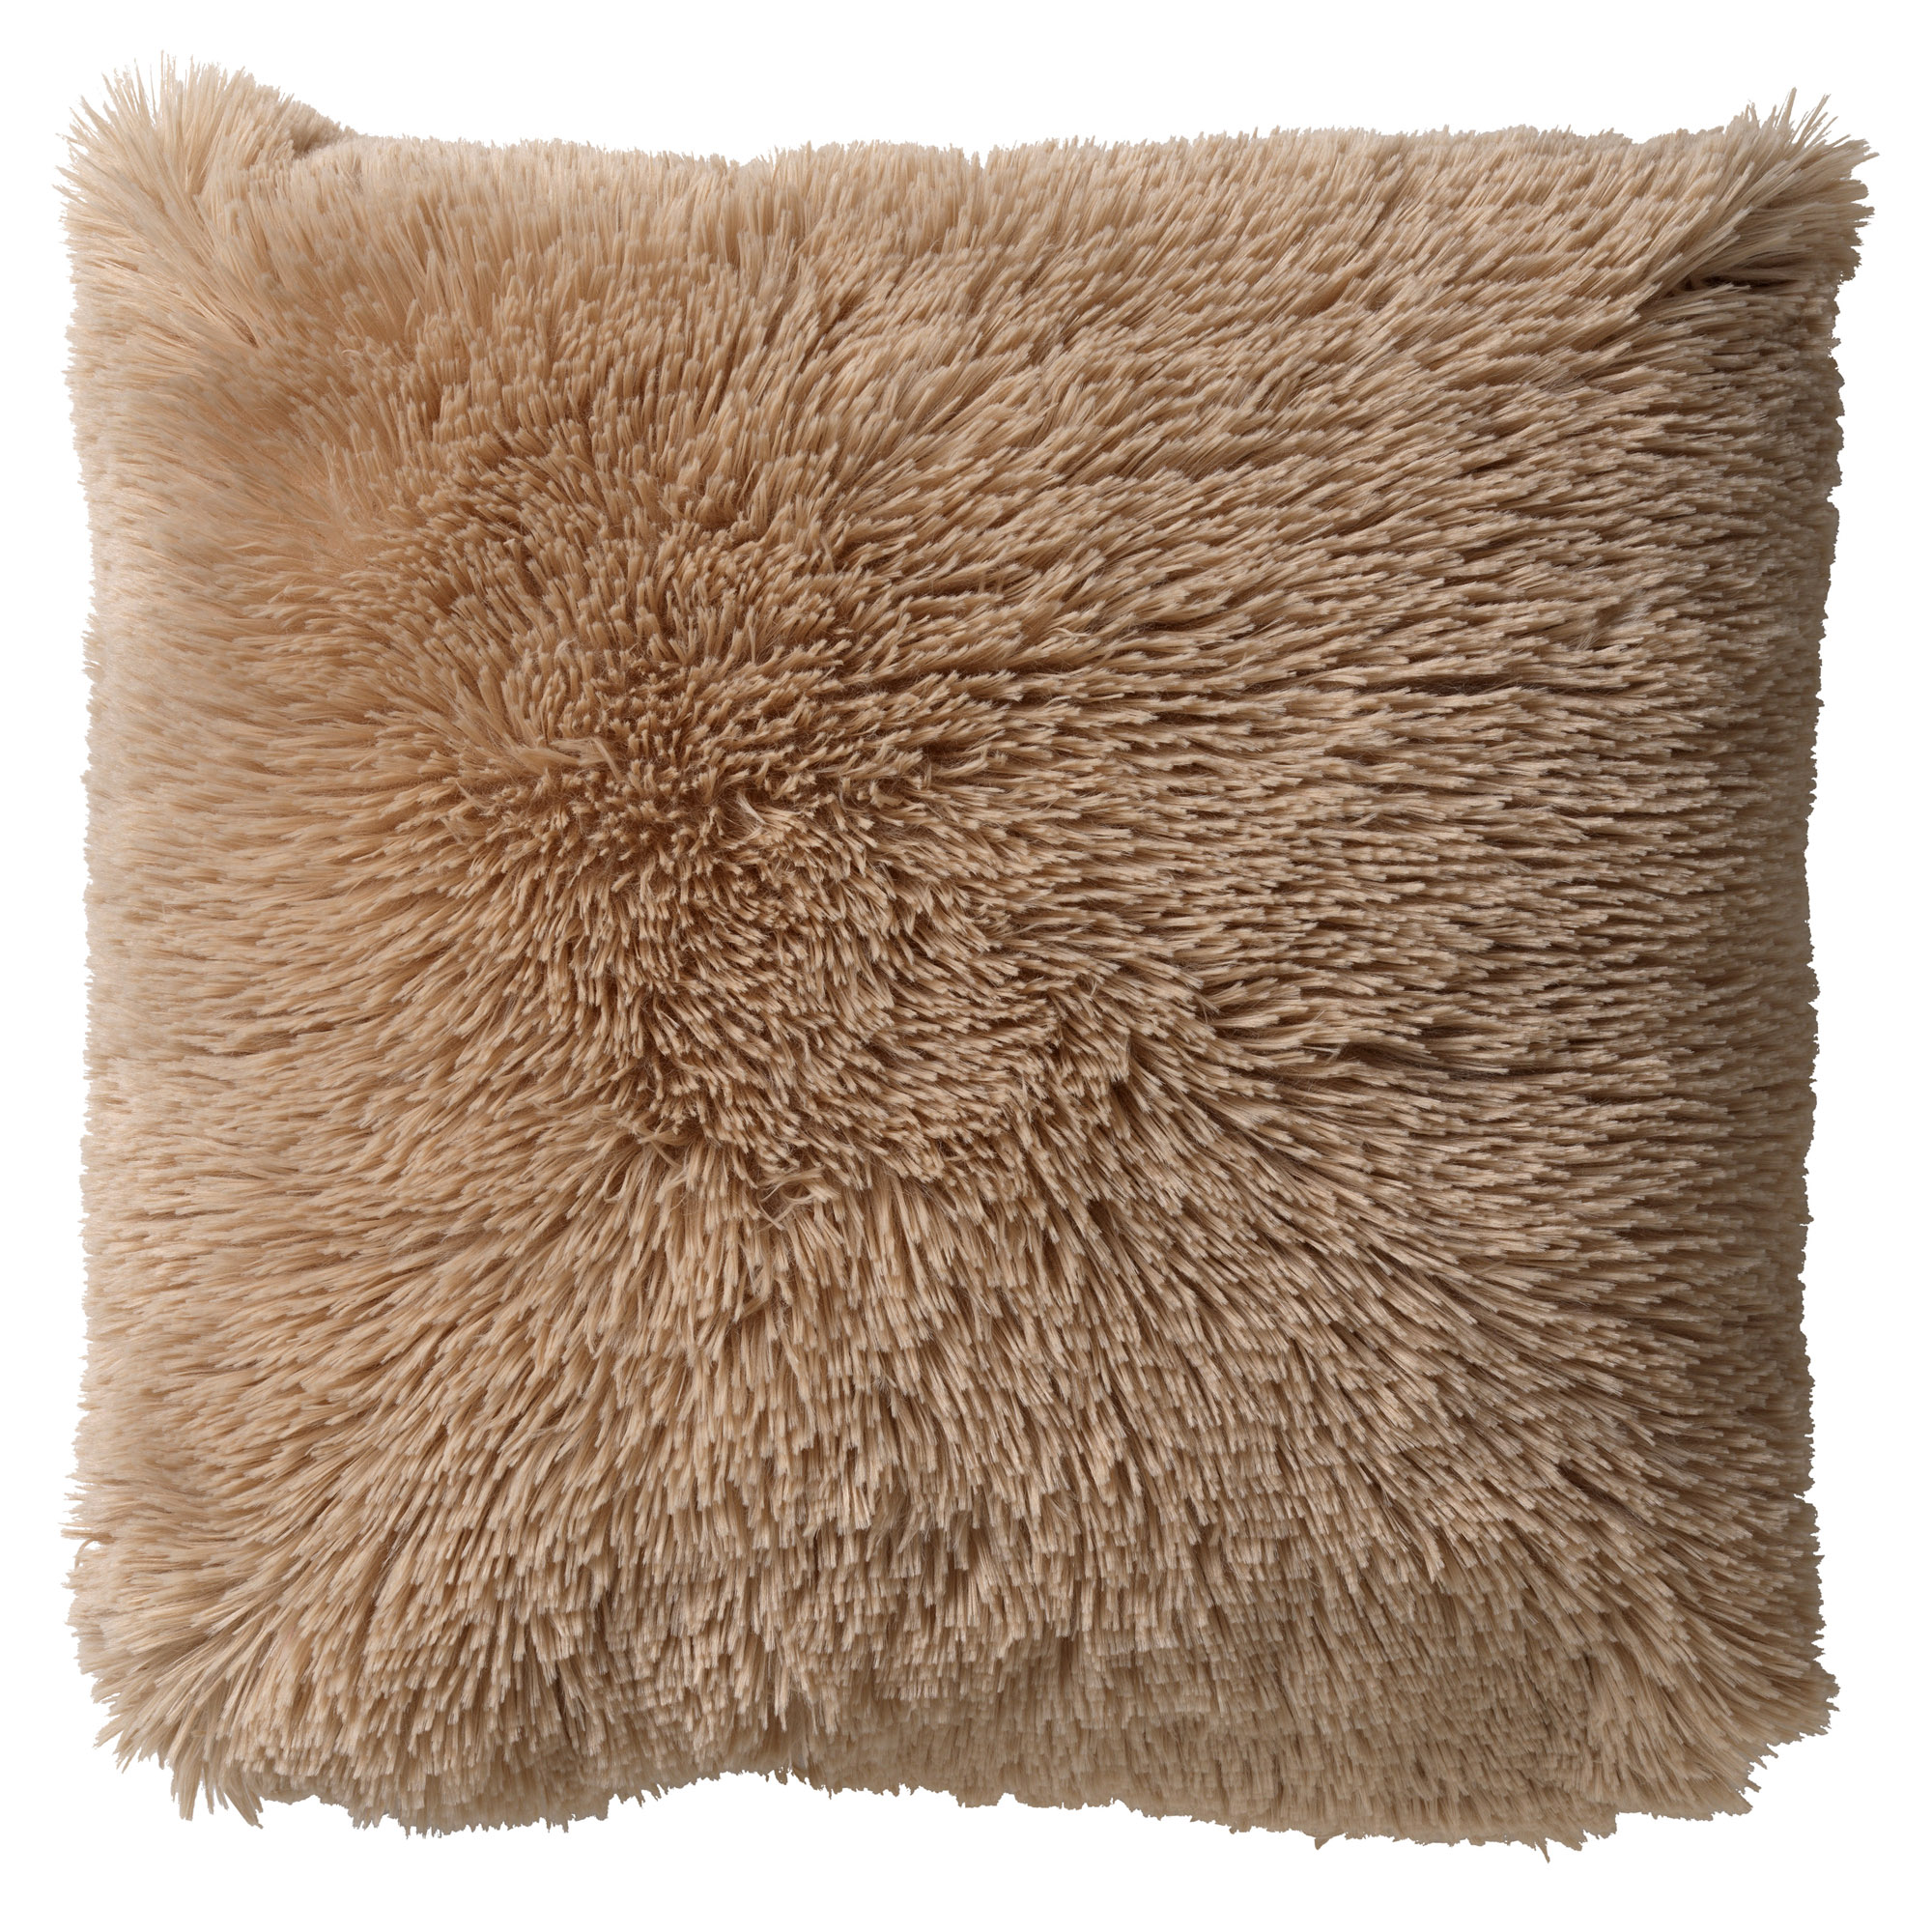 FLUFFY - Cushion 60x60 cm - Pumice Stone - beige